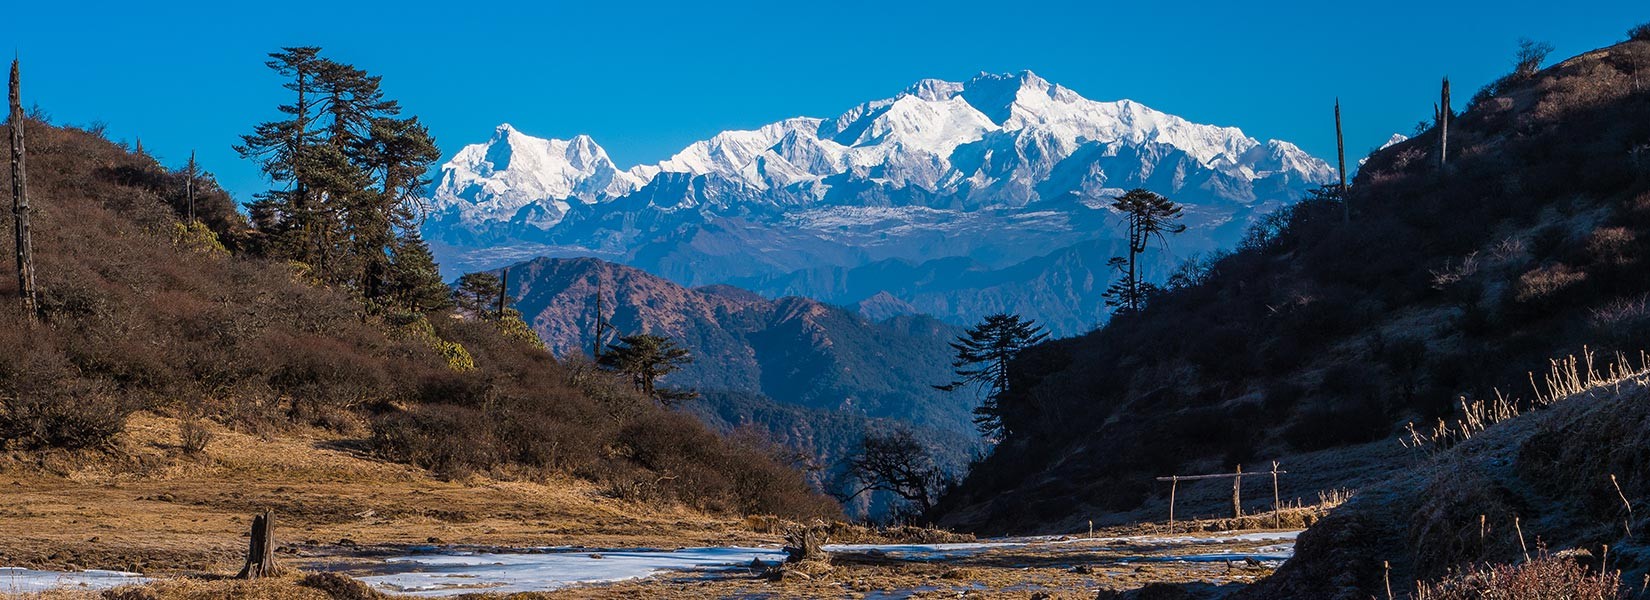 Kanchenjunga Trek - 21 Days Itinerary